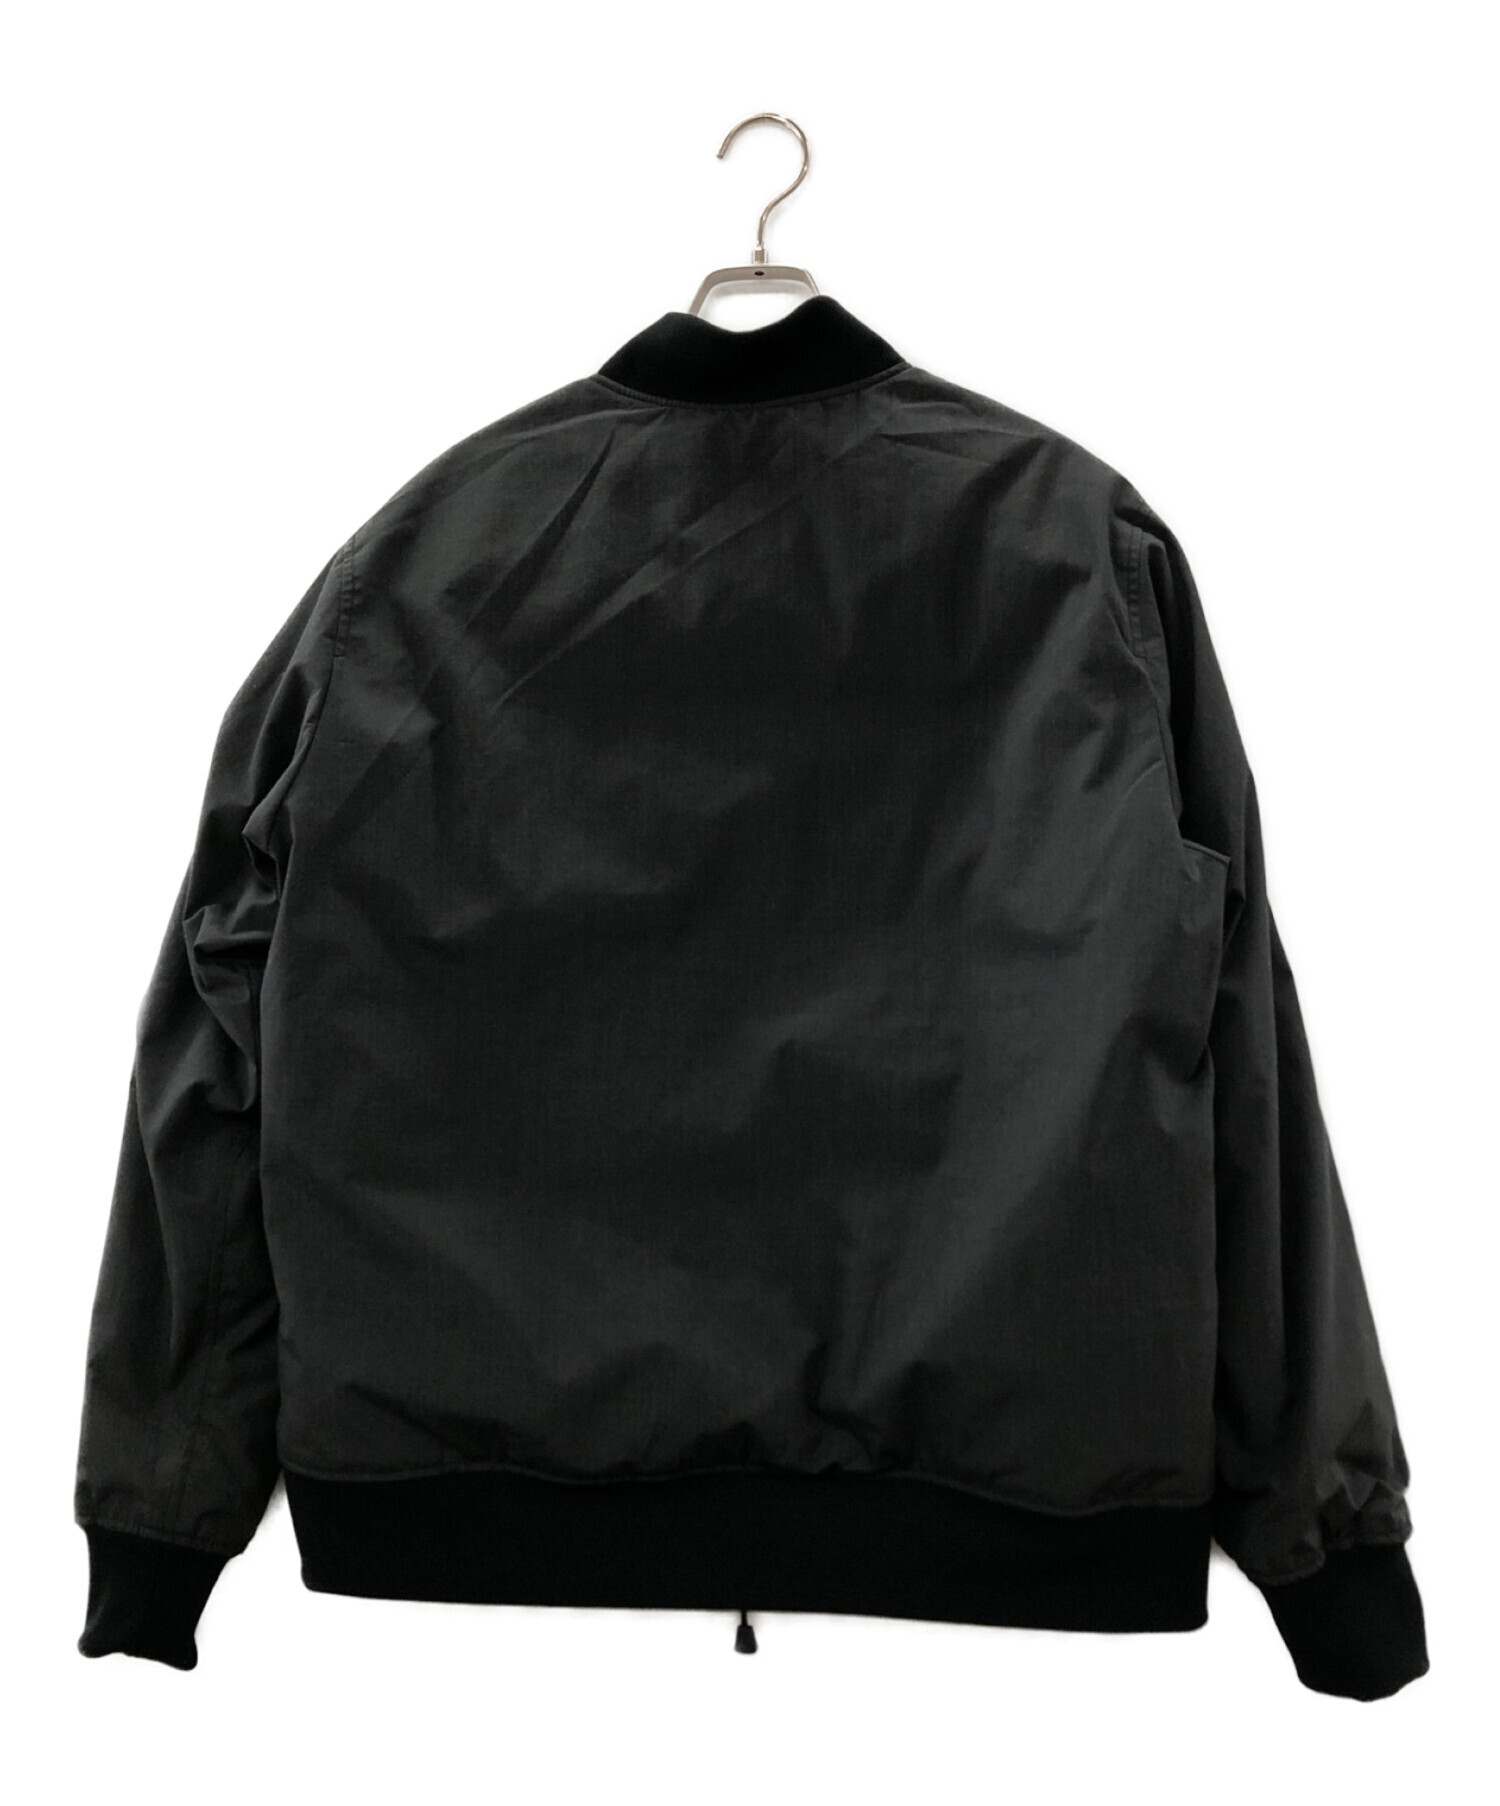 NANGA (ナンガ) MA-1ダウンジャケット ブラック×グレー サイズ:L